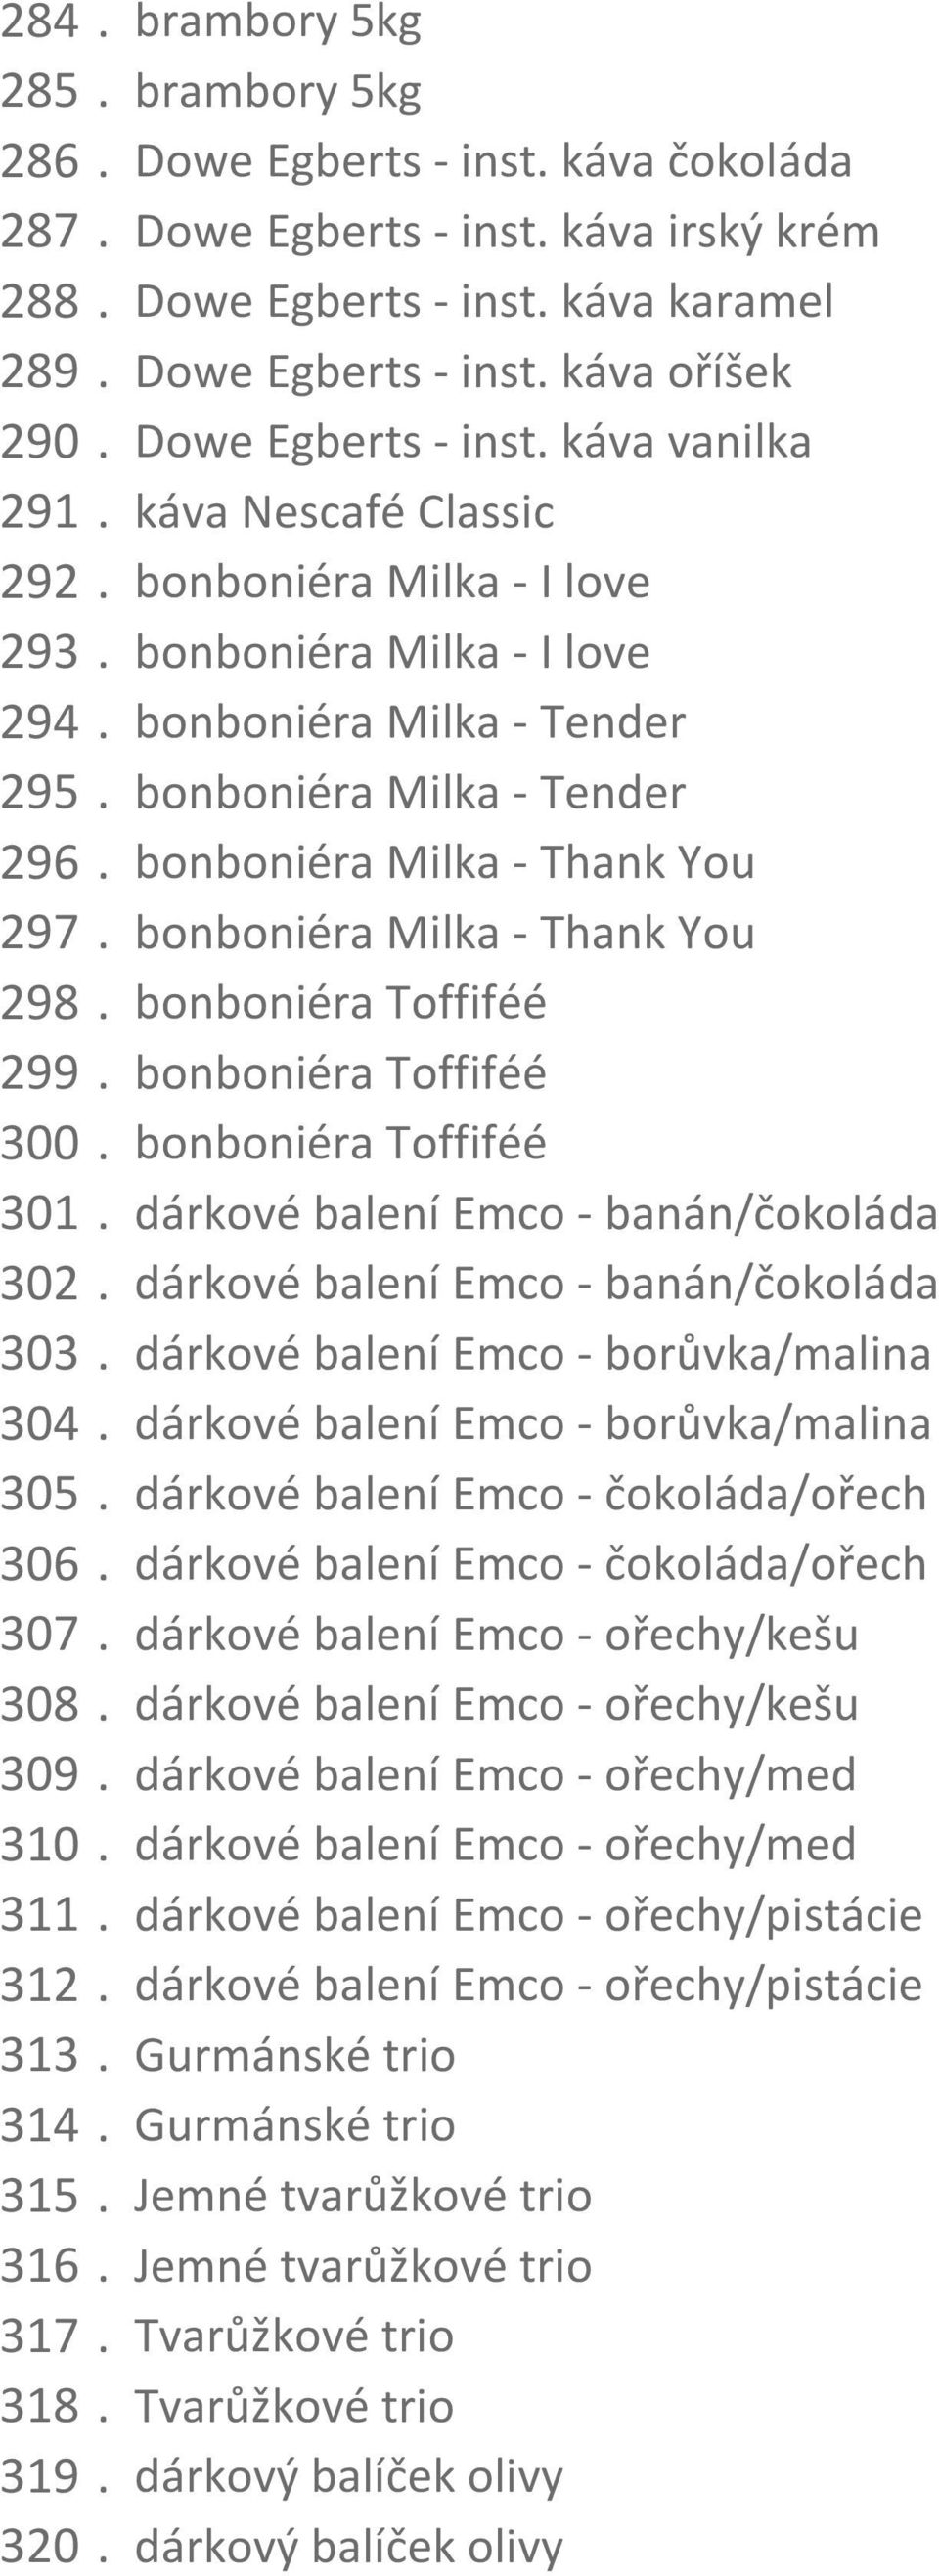 bonboniéra Milka - Thank You 297. bonboniéra Milka - Thank You 298. bonboniéra Toffiféé 299. bonboniéra Toffiféé 300. bonboniéra Toffiféé 301. dárkové balení Emco - banán/čokoláda 302.